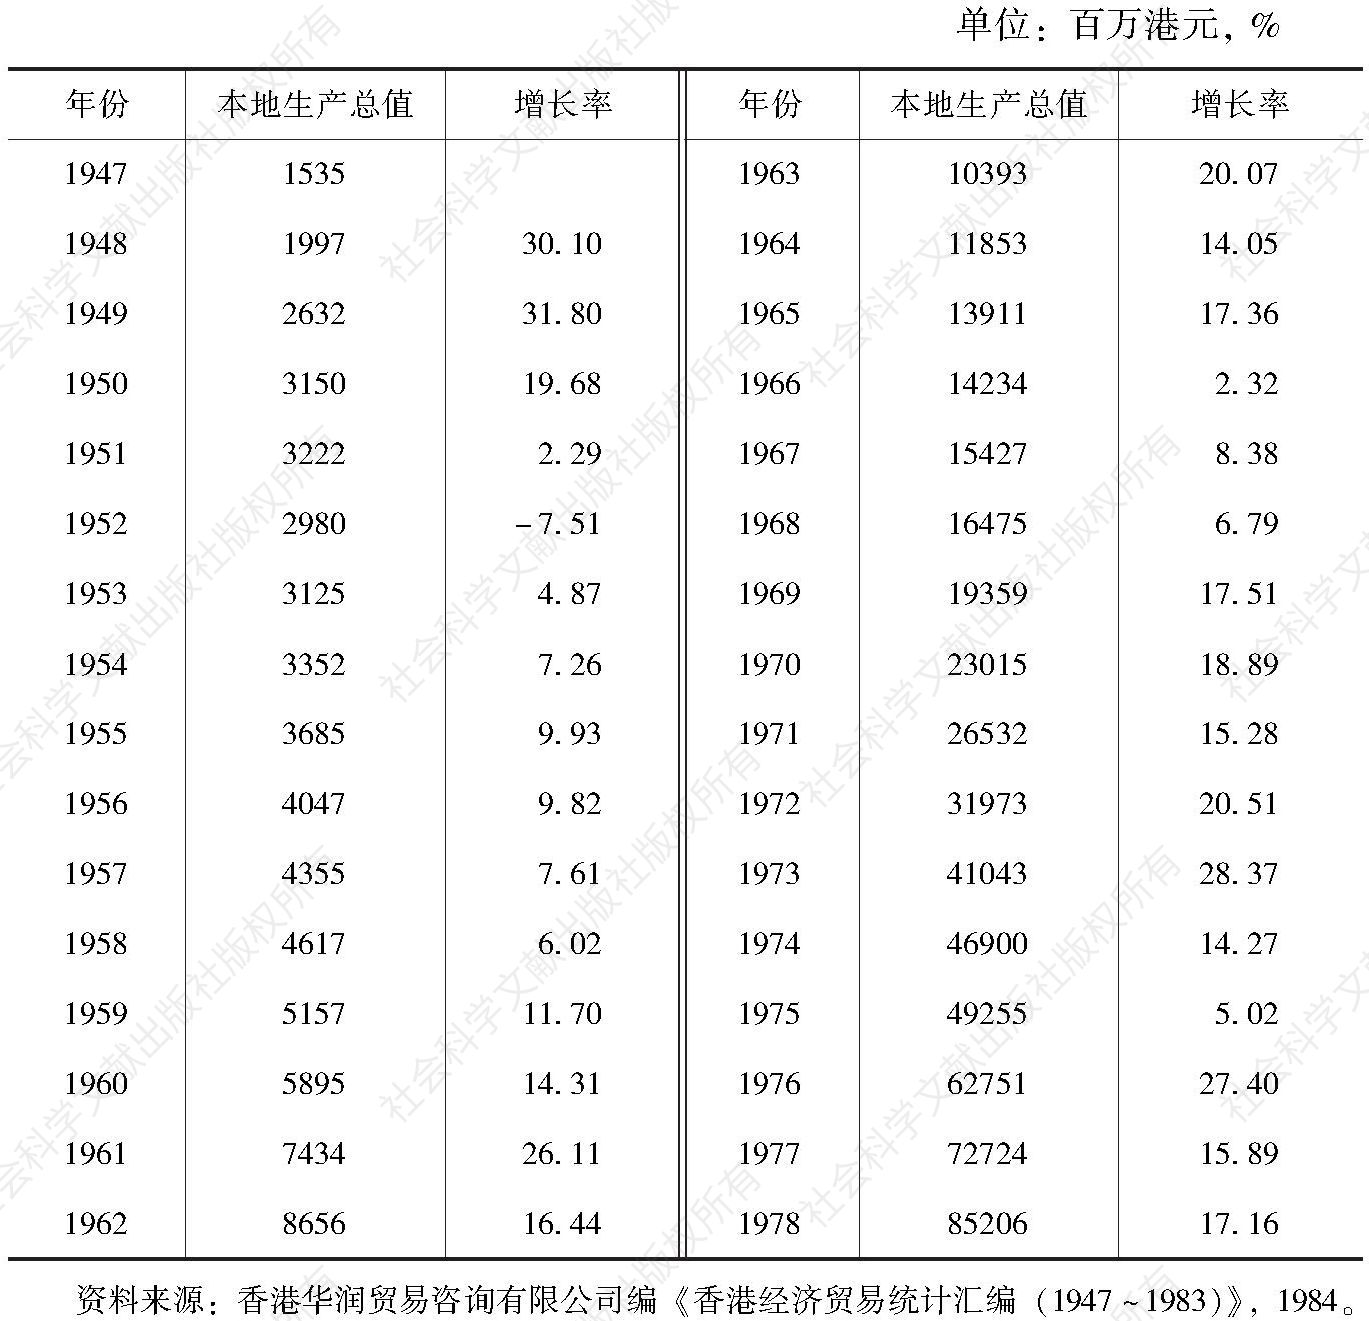 表1-4 1947～1978年香港的本地生产总值及增长率